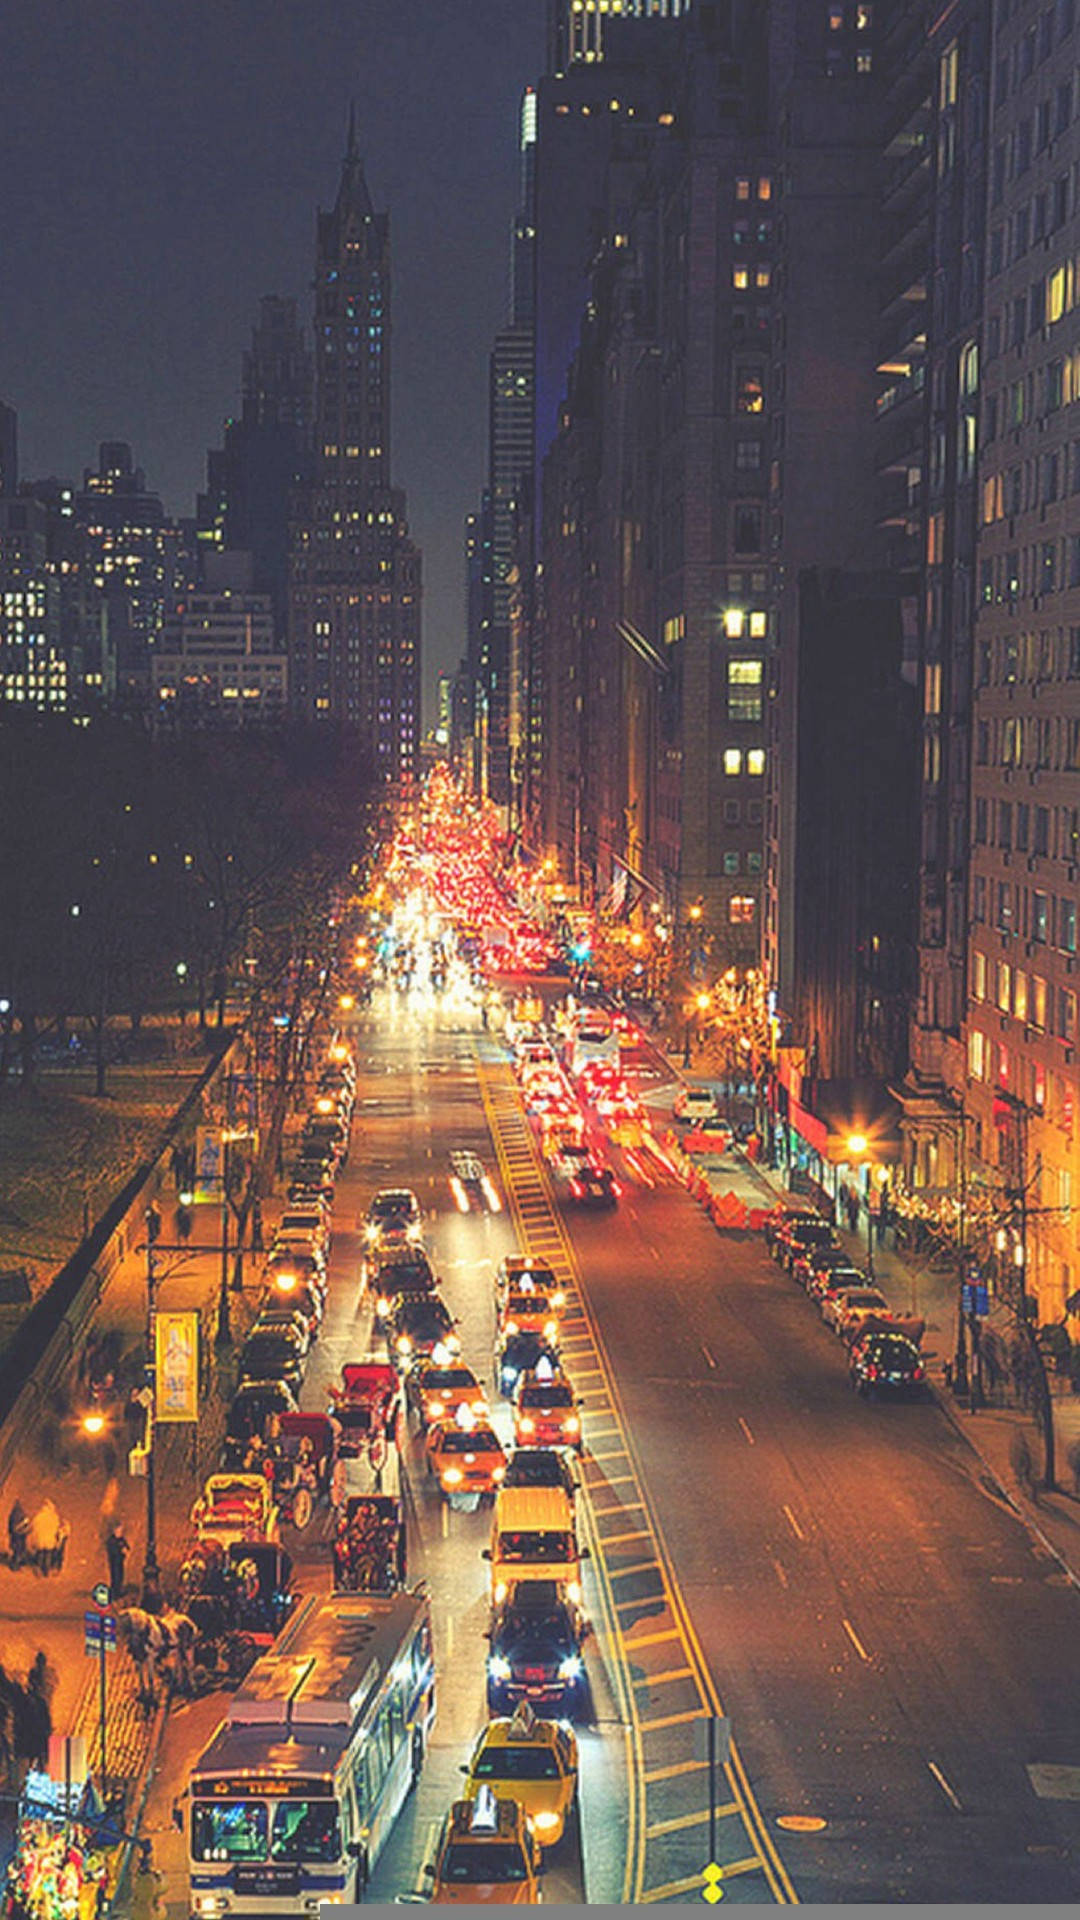 Lucesde Calle De La Ciudad De Nueva York En El Iphone X. Fondo de pantalla